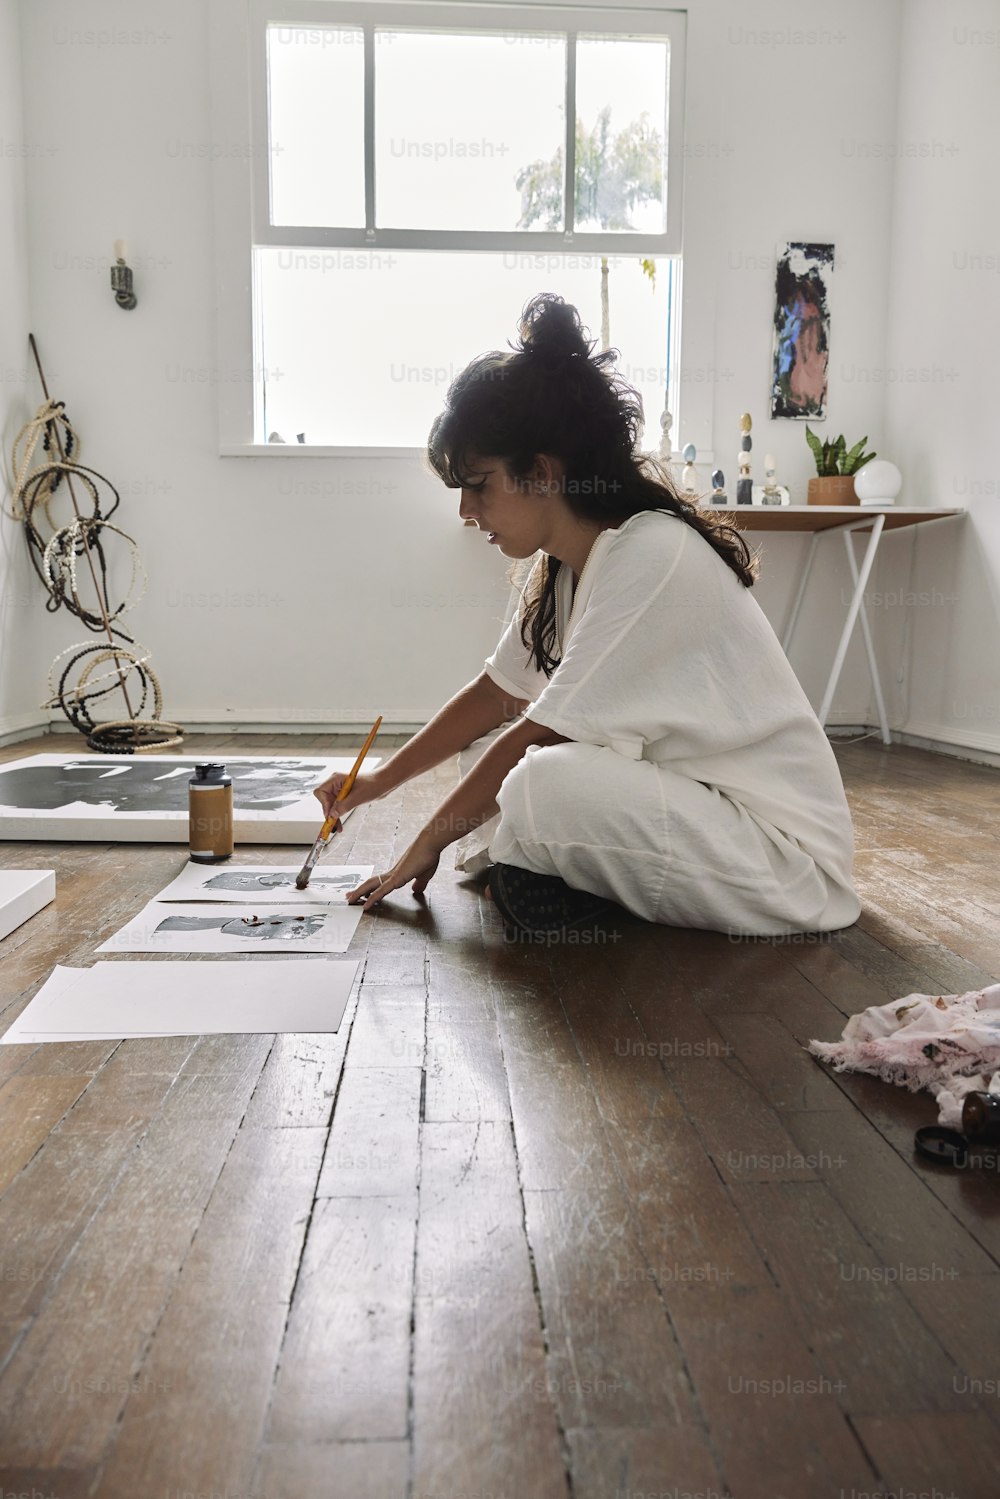 Una mujer sentada en el suelo dibujando en un pedazo de papel